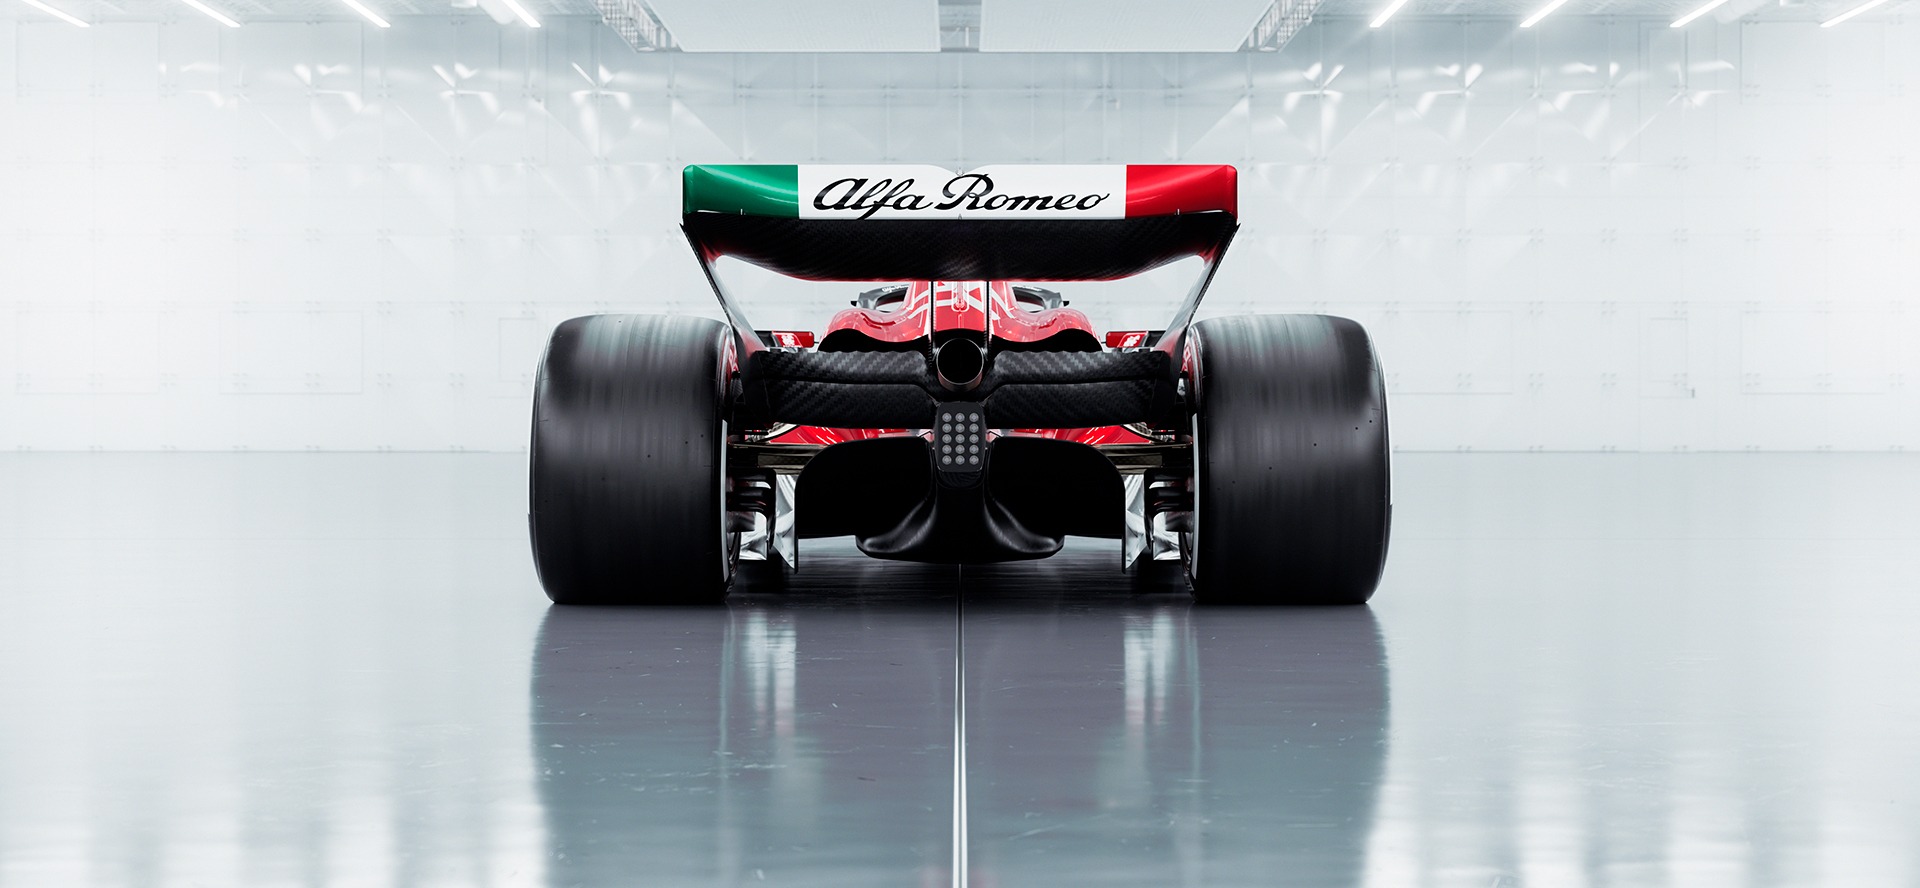 Alfa Romeo Formula 1